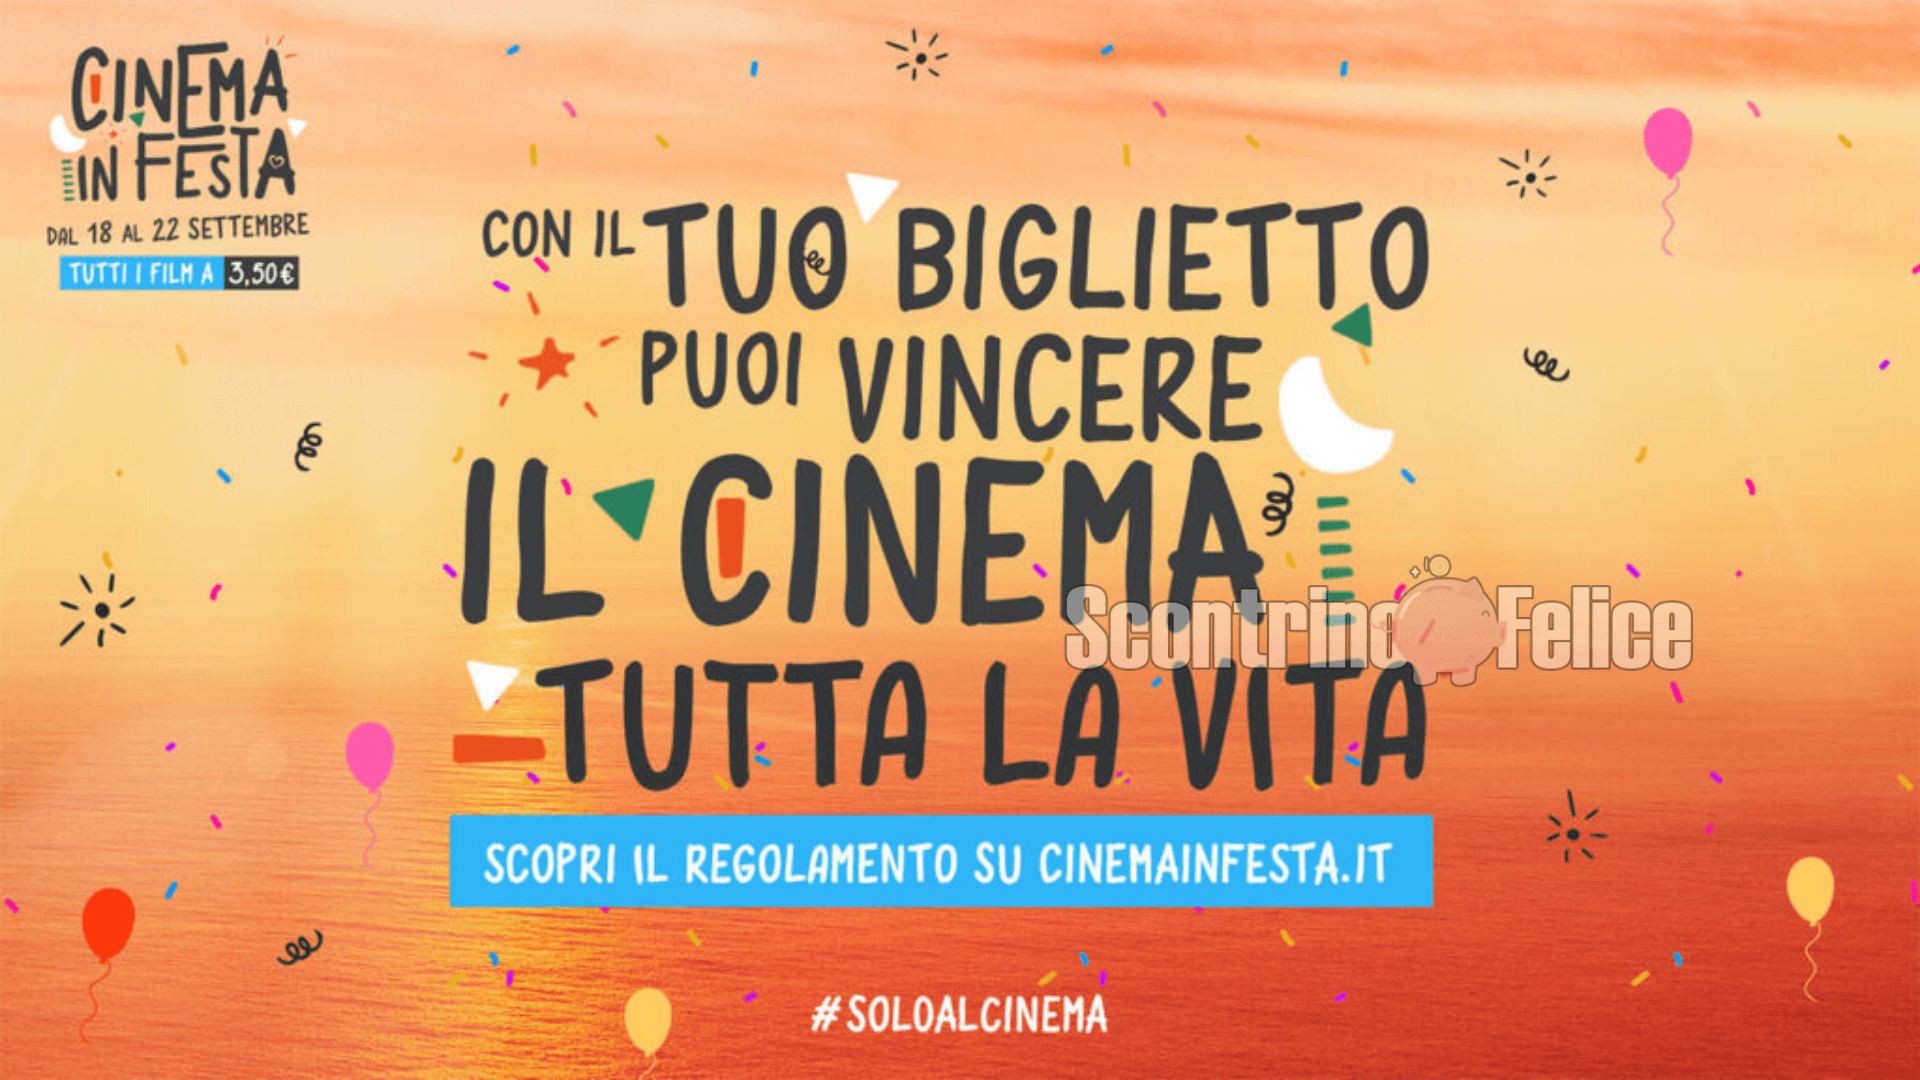 Cinema in Festa 2022: biglietti a solo 3,50 euro e vinci cinema GRATIS per tutta la vita! 1